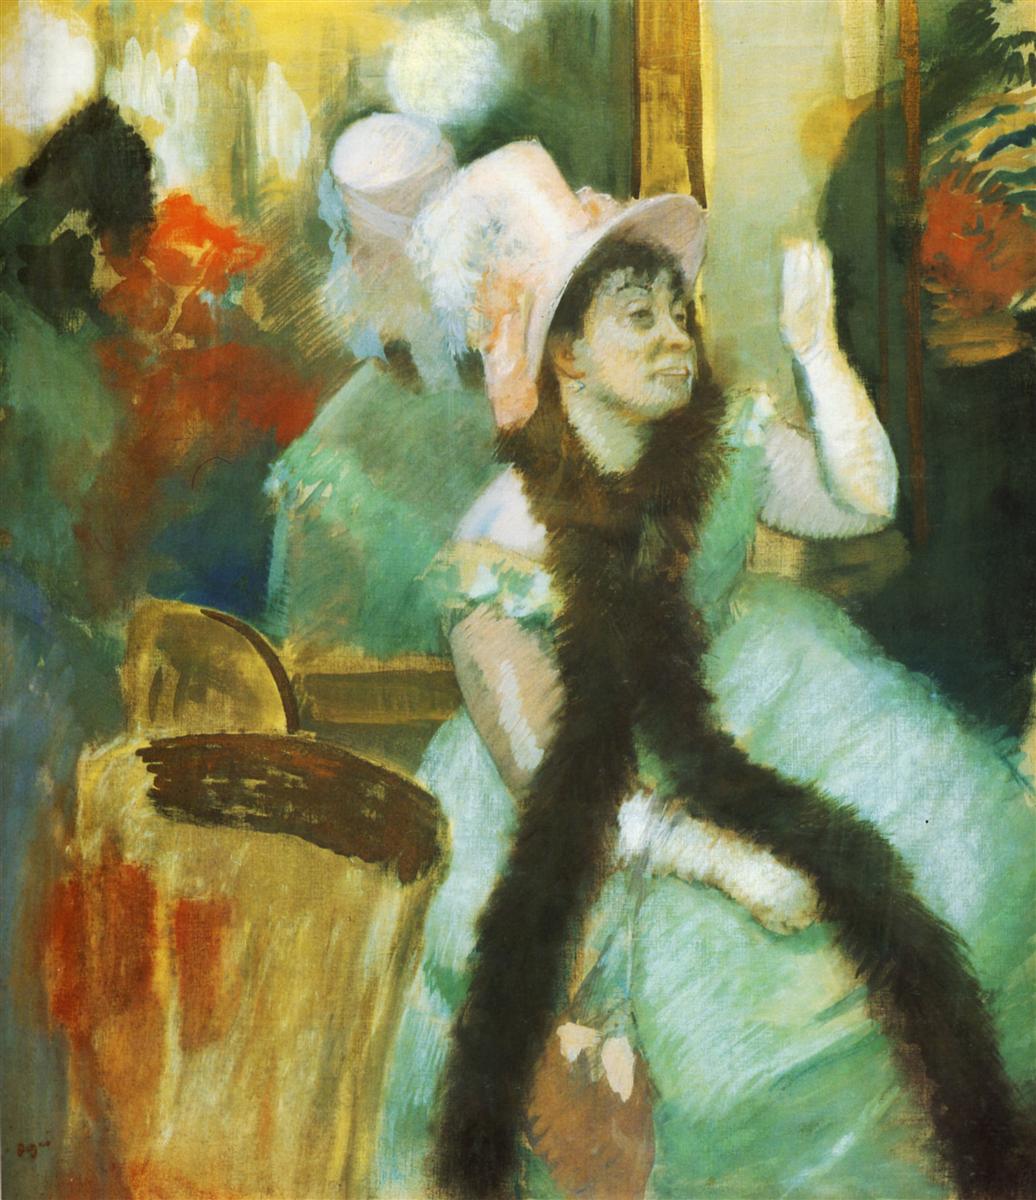 Edgar+Degas-1834-1917 (577).jpg